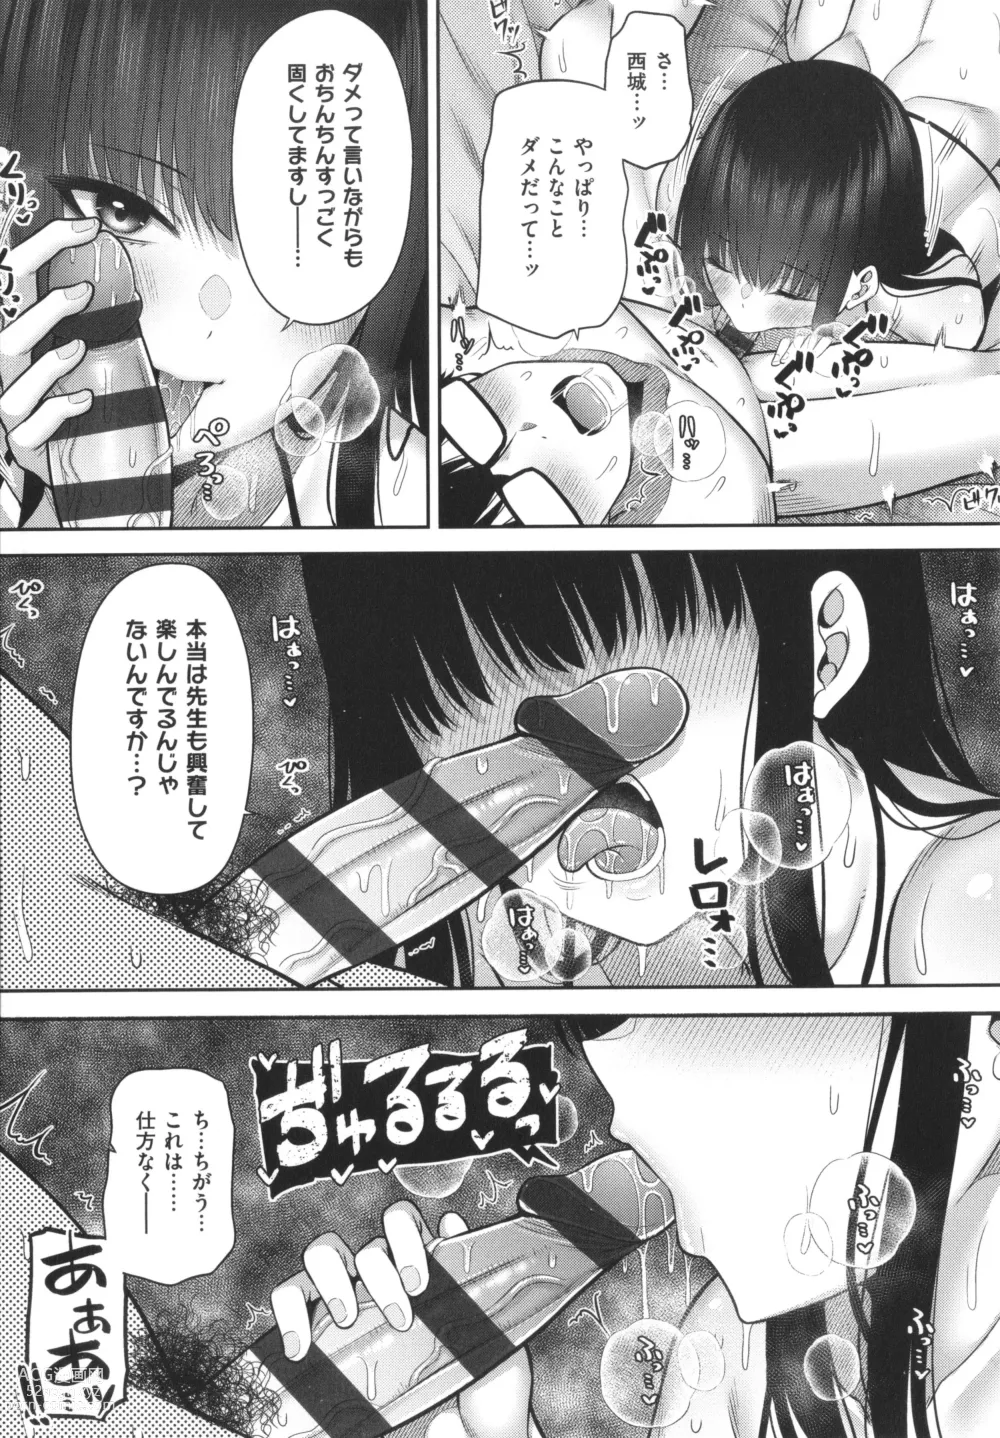 Page 246 of manga Enkou Shoujo wa Suki Desuka?